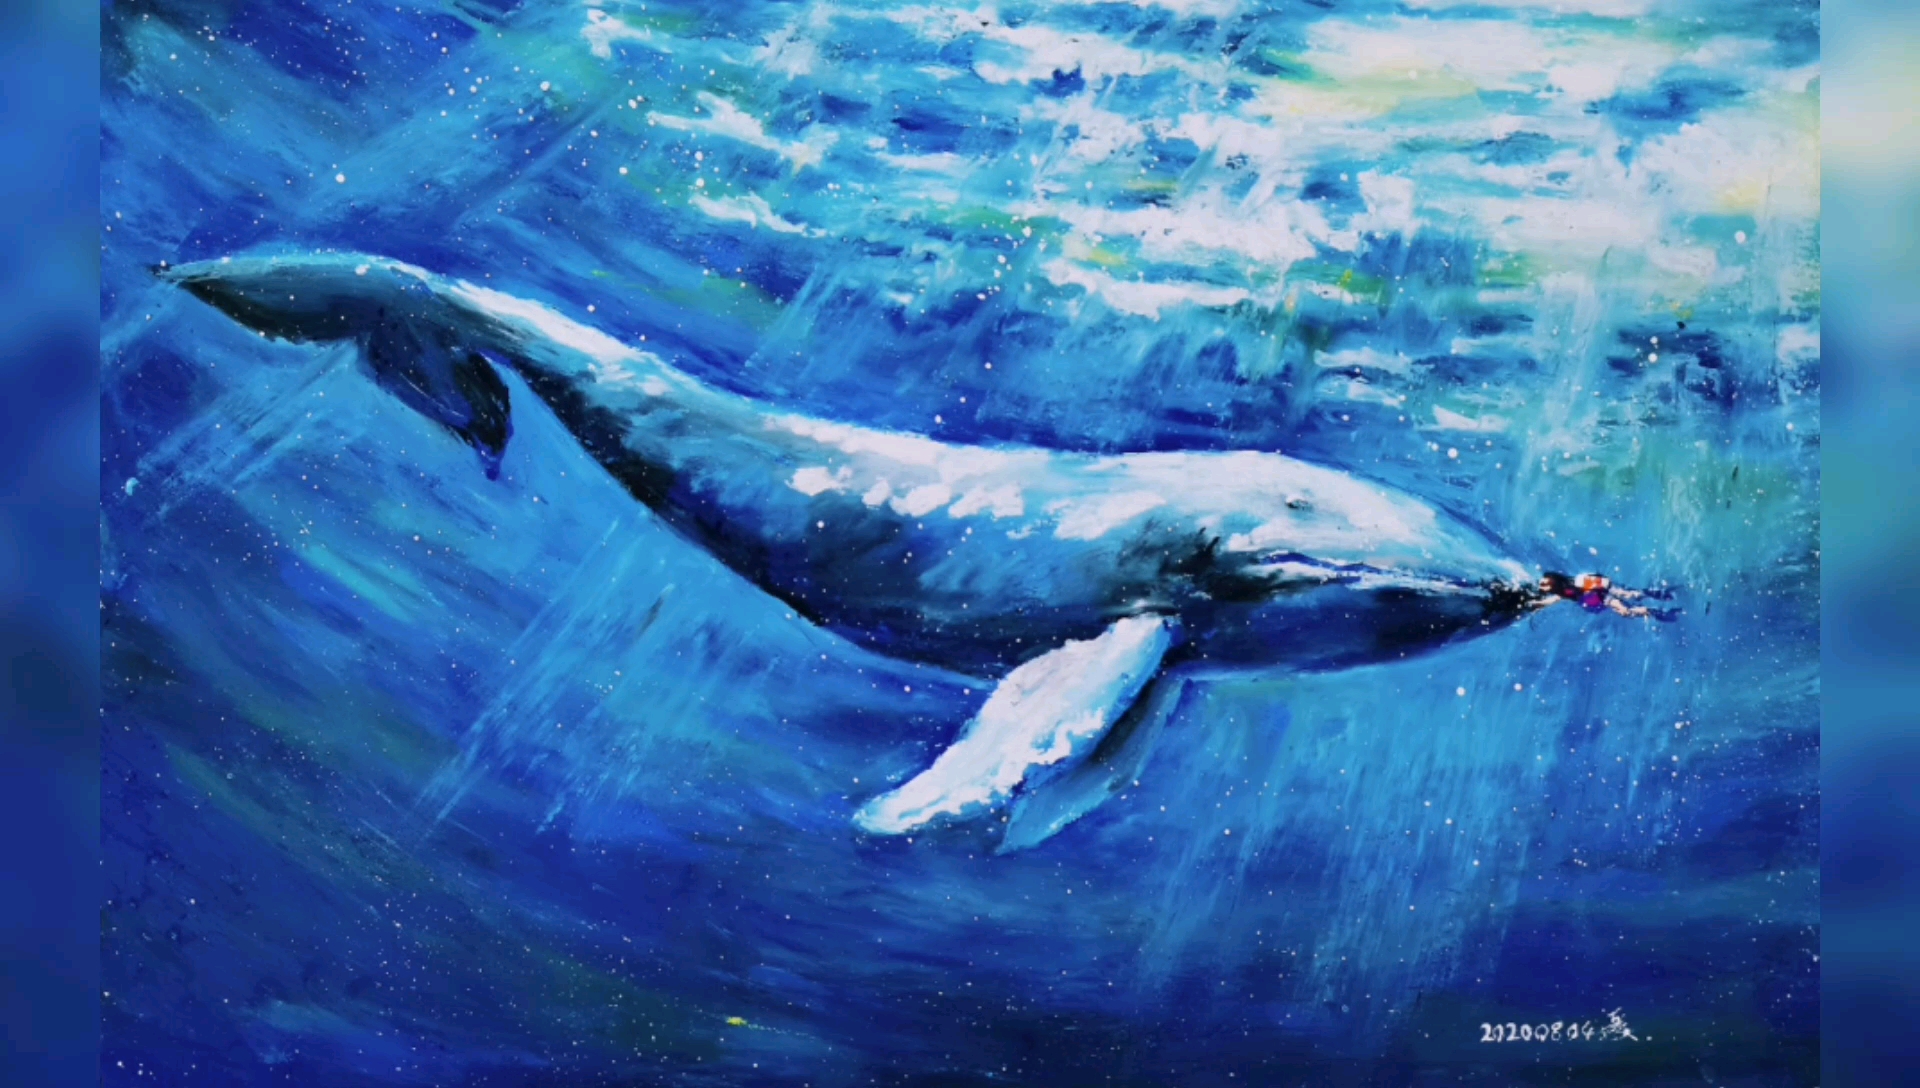 【油画棒】淌游大海,与鲸共舞